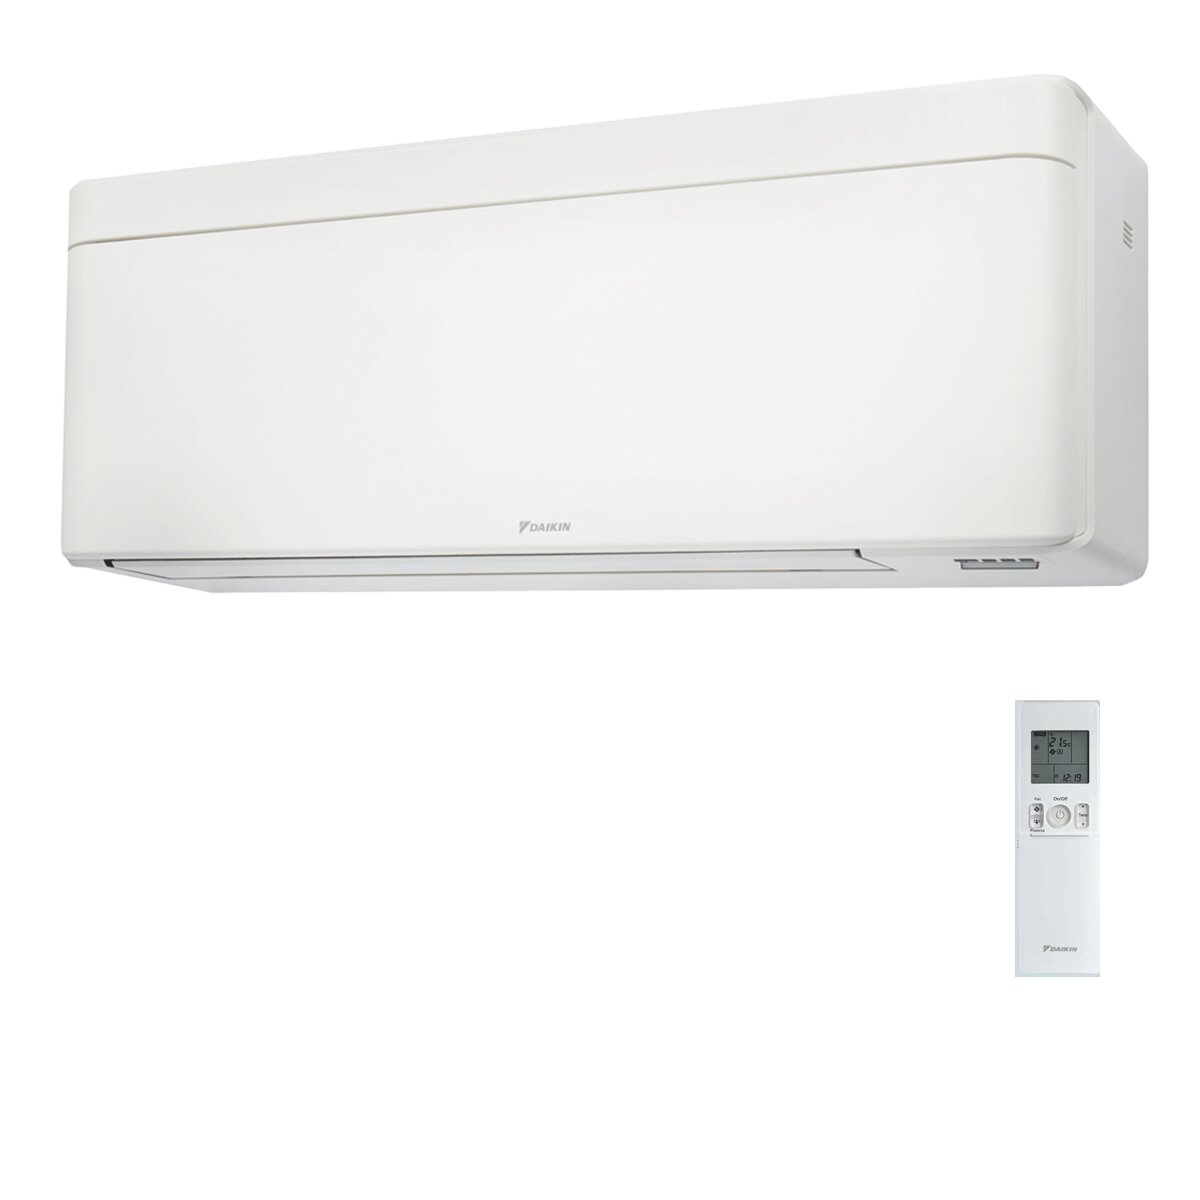 Daikin Stylish White trial split air conditioner 9000+12000+18000 BTU inverter A++ wifi external unit 7.8 kW